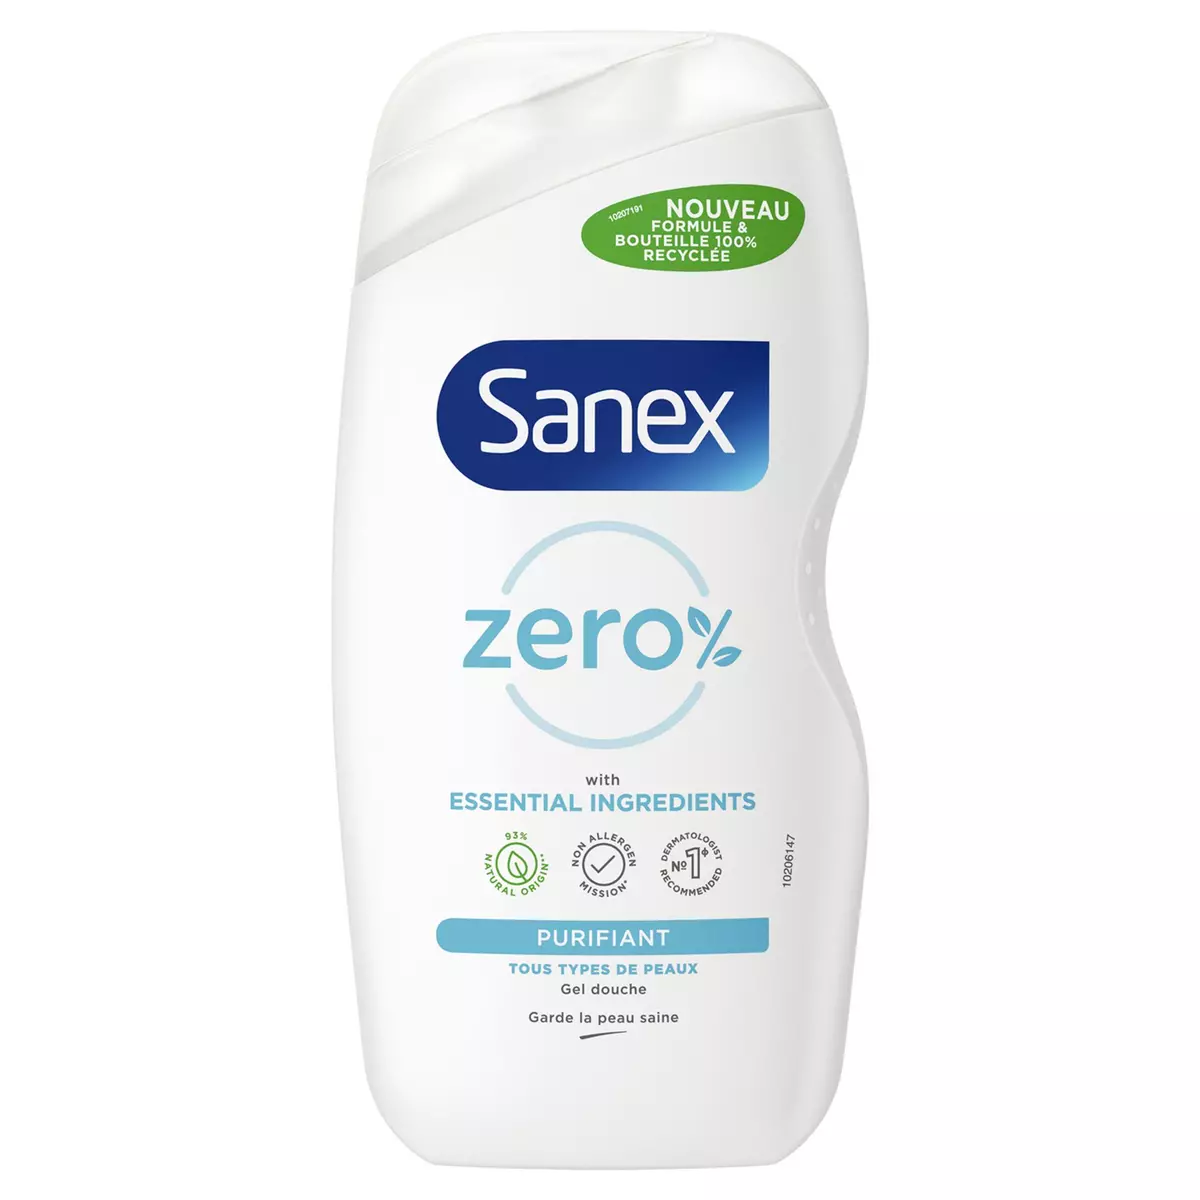 SANEX Gel douche zero% purifiant tous types de peaux 475ml